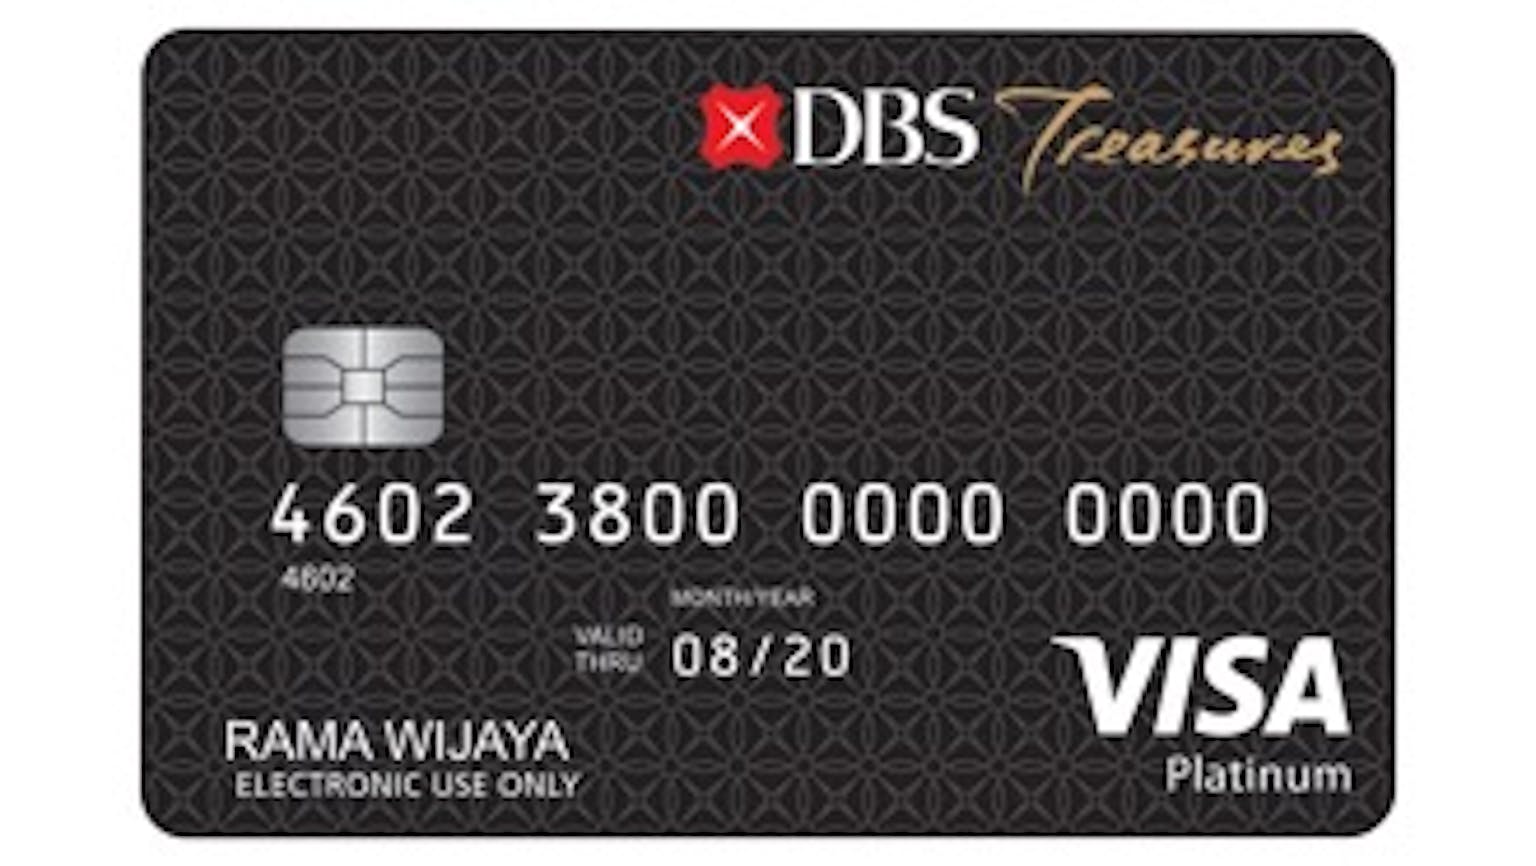 Kartu Debit DBS Treasures Visa Platinum